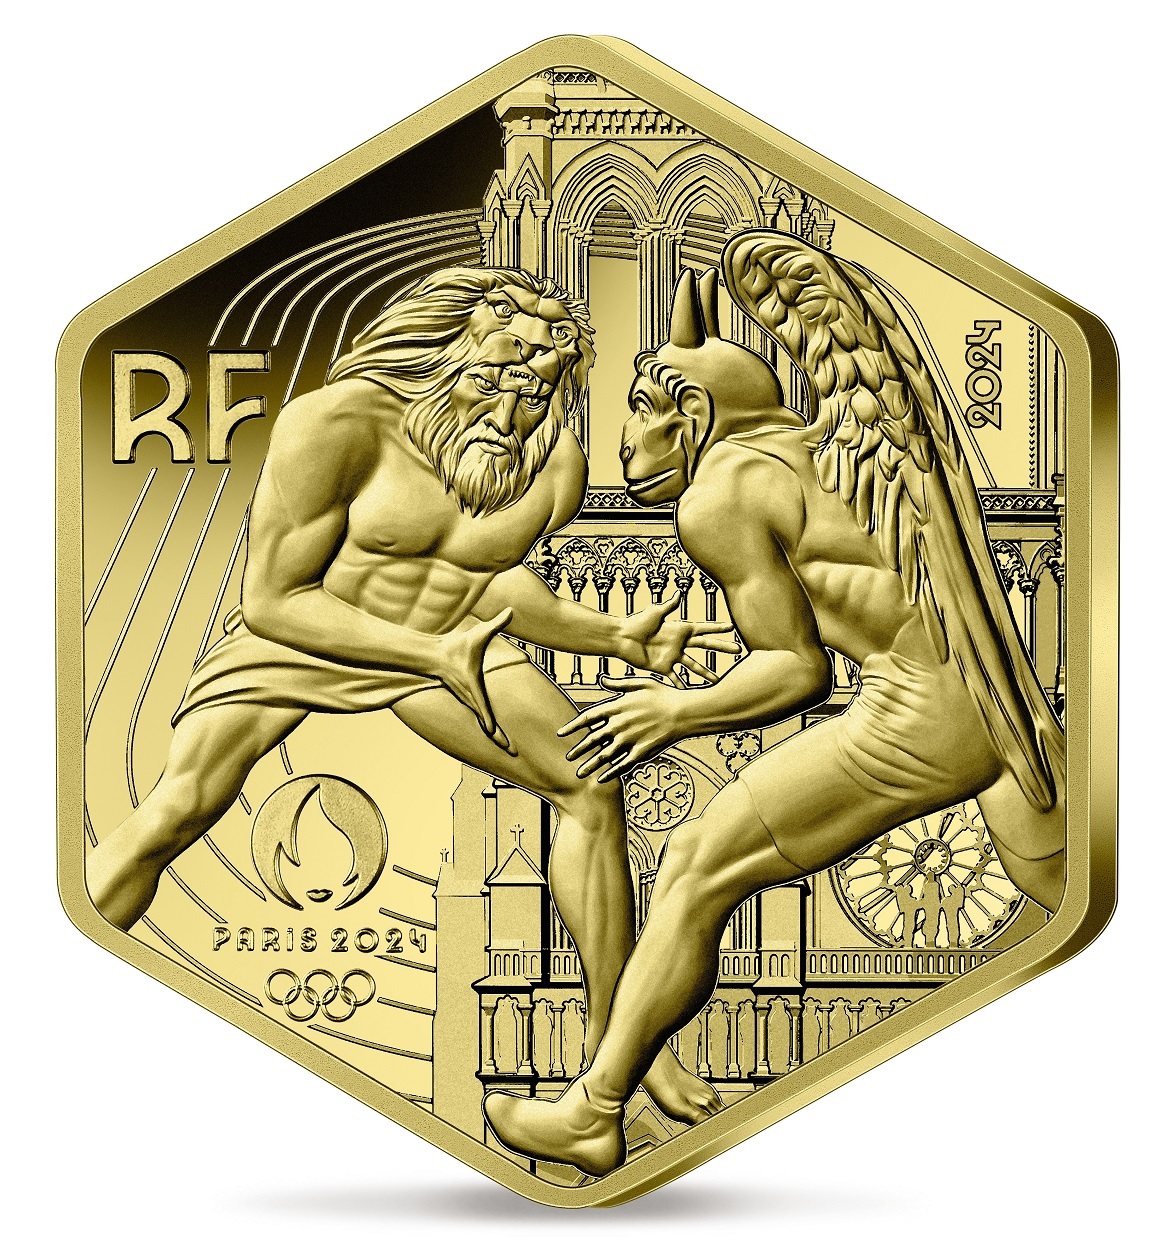 (EUR07.BU.2024.10041377600001) 250 euro France 2024 BU gold - Paris Olympic Games Obverse (zoom)